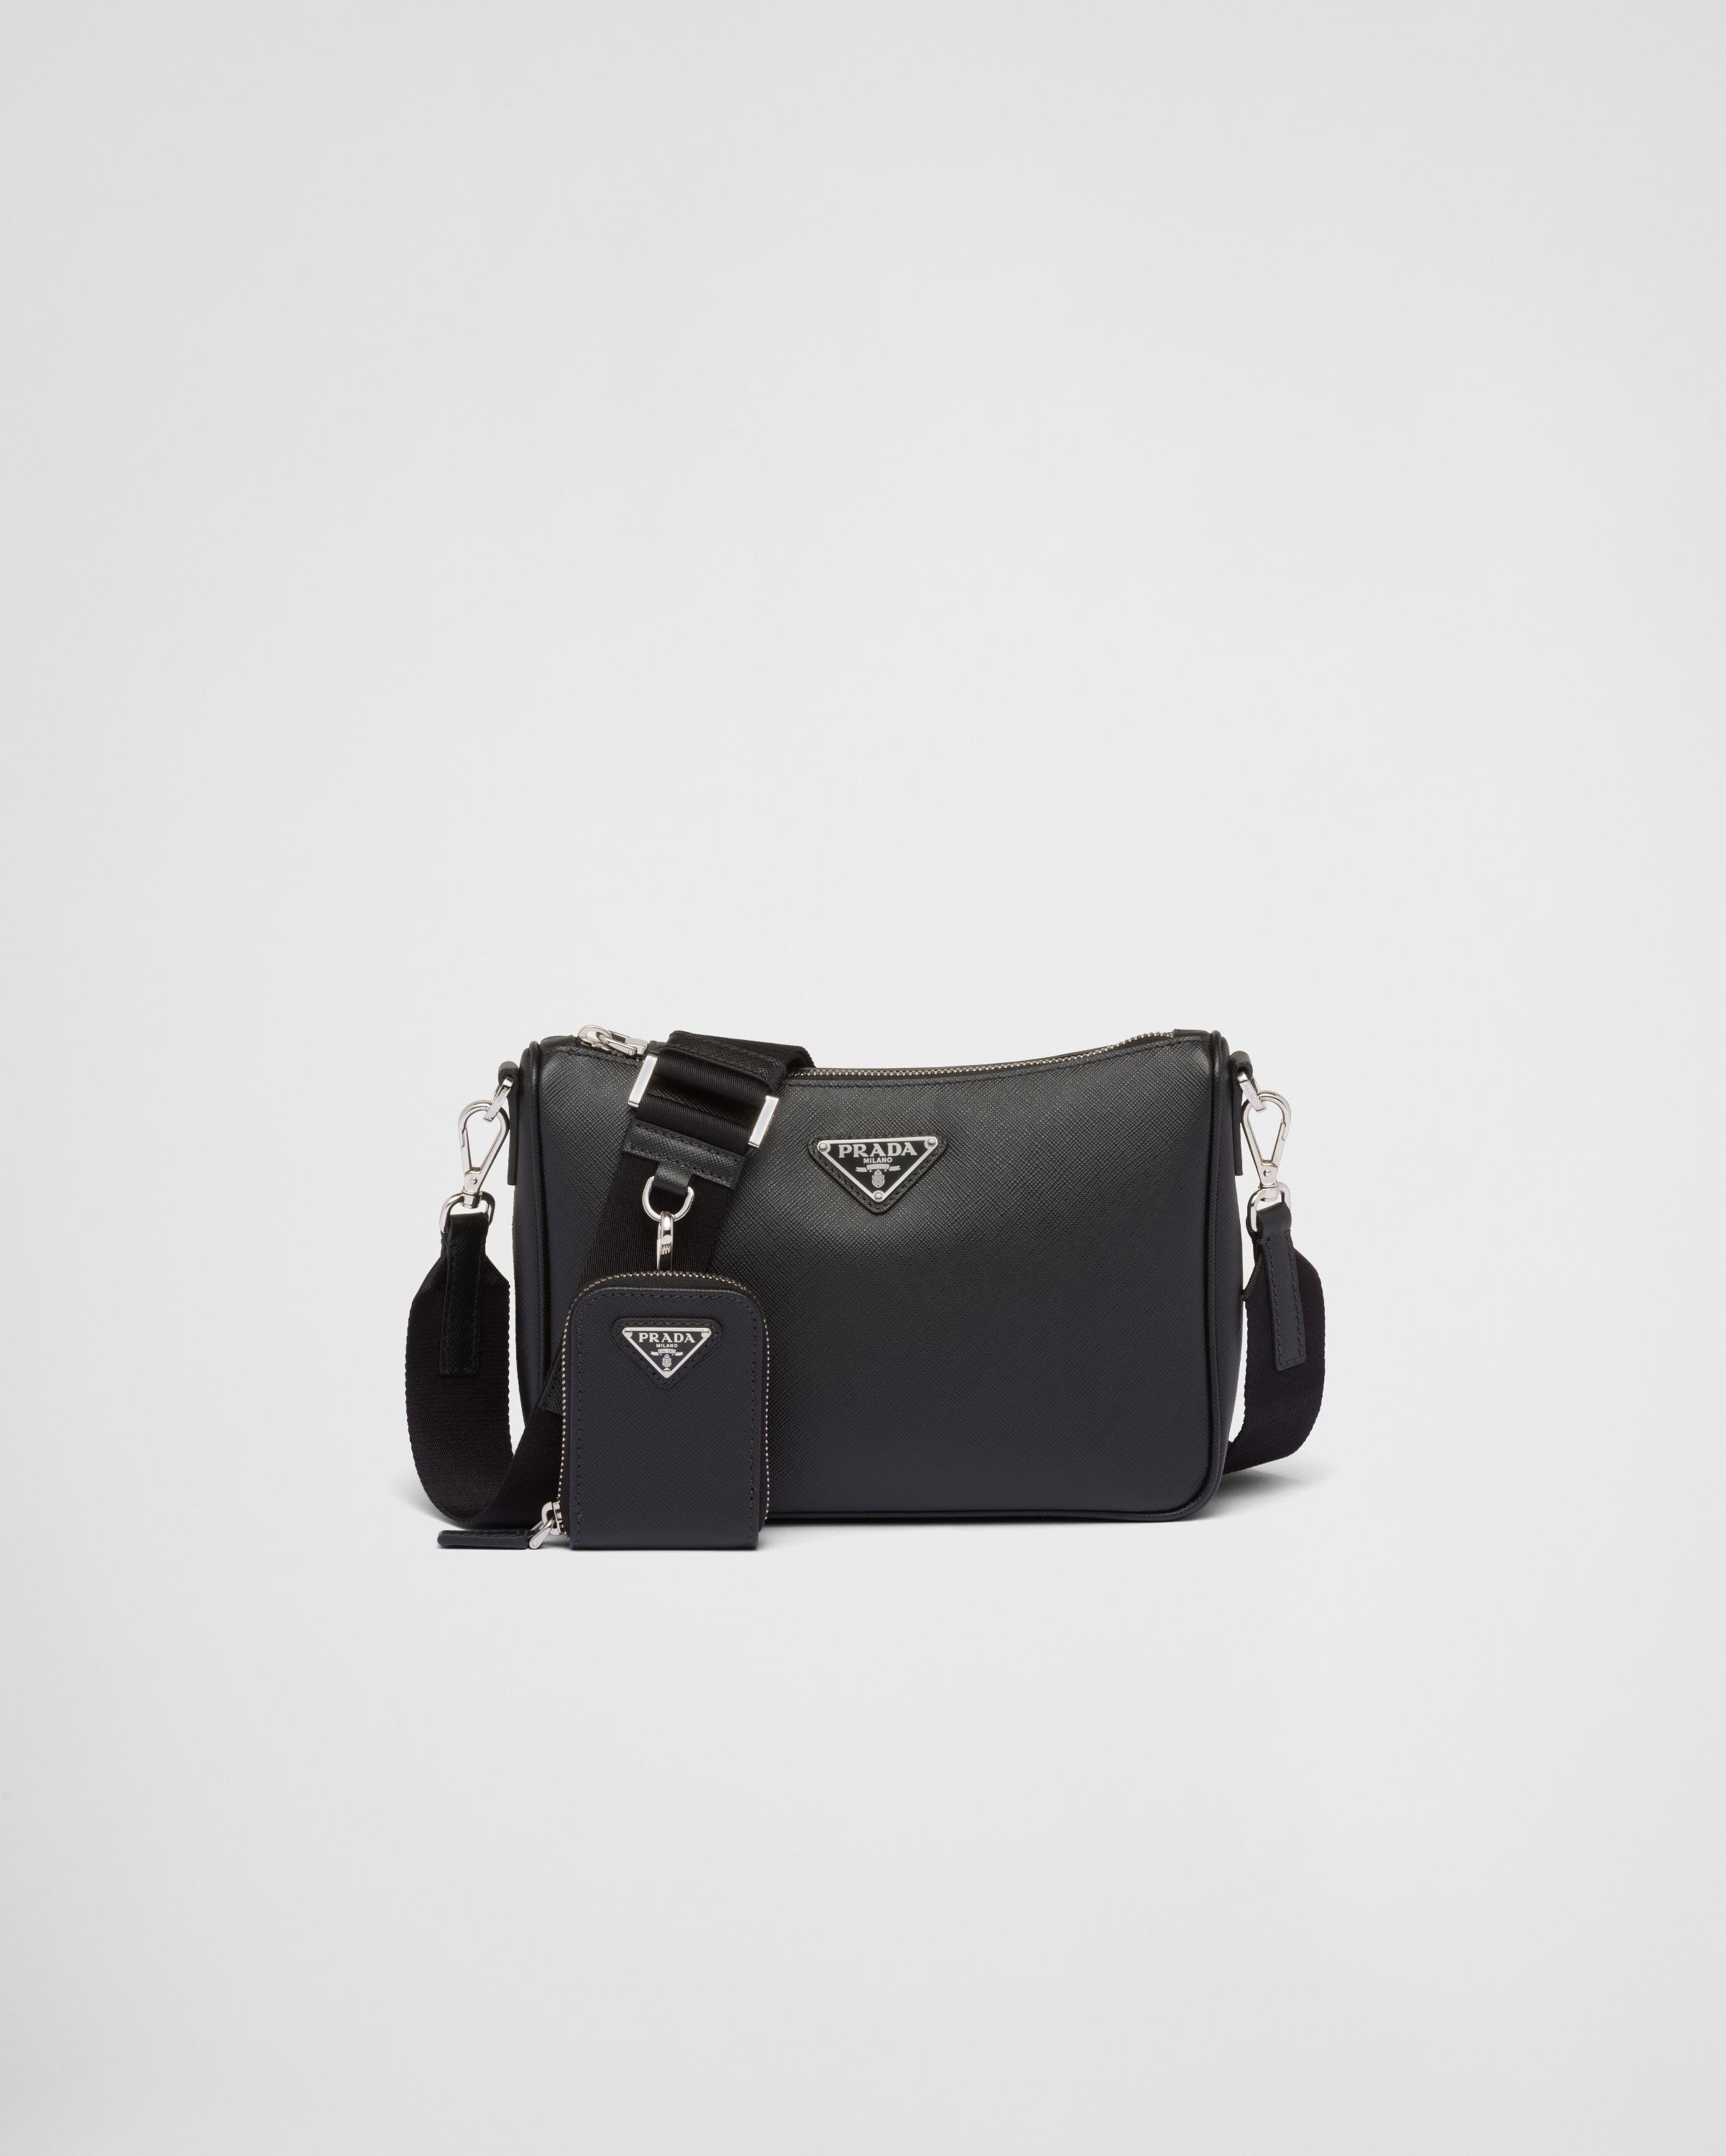 Prada Black Saffiano leather messenger bag